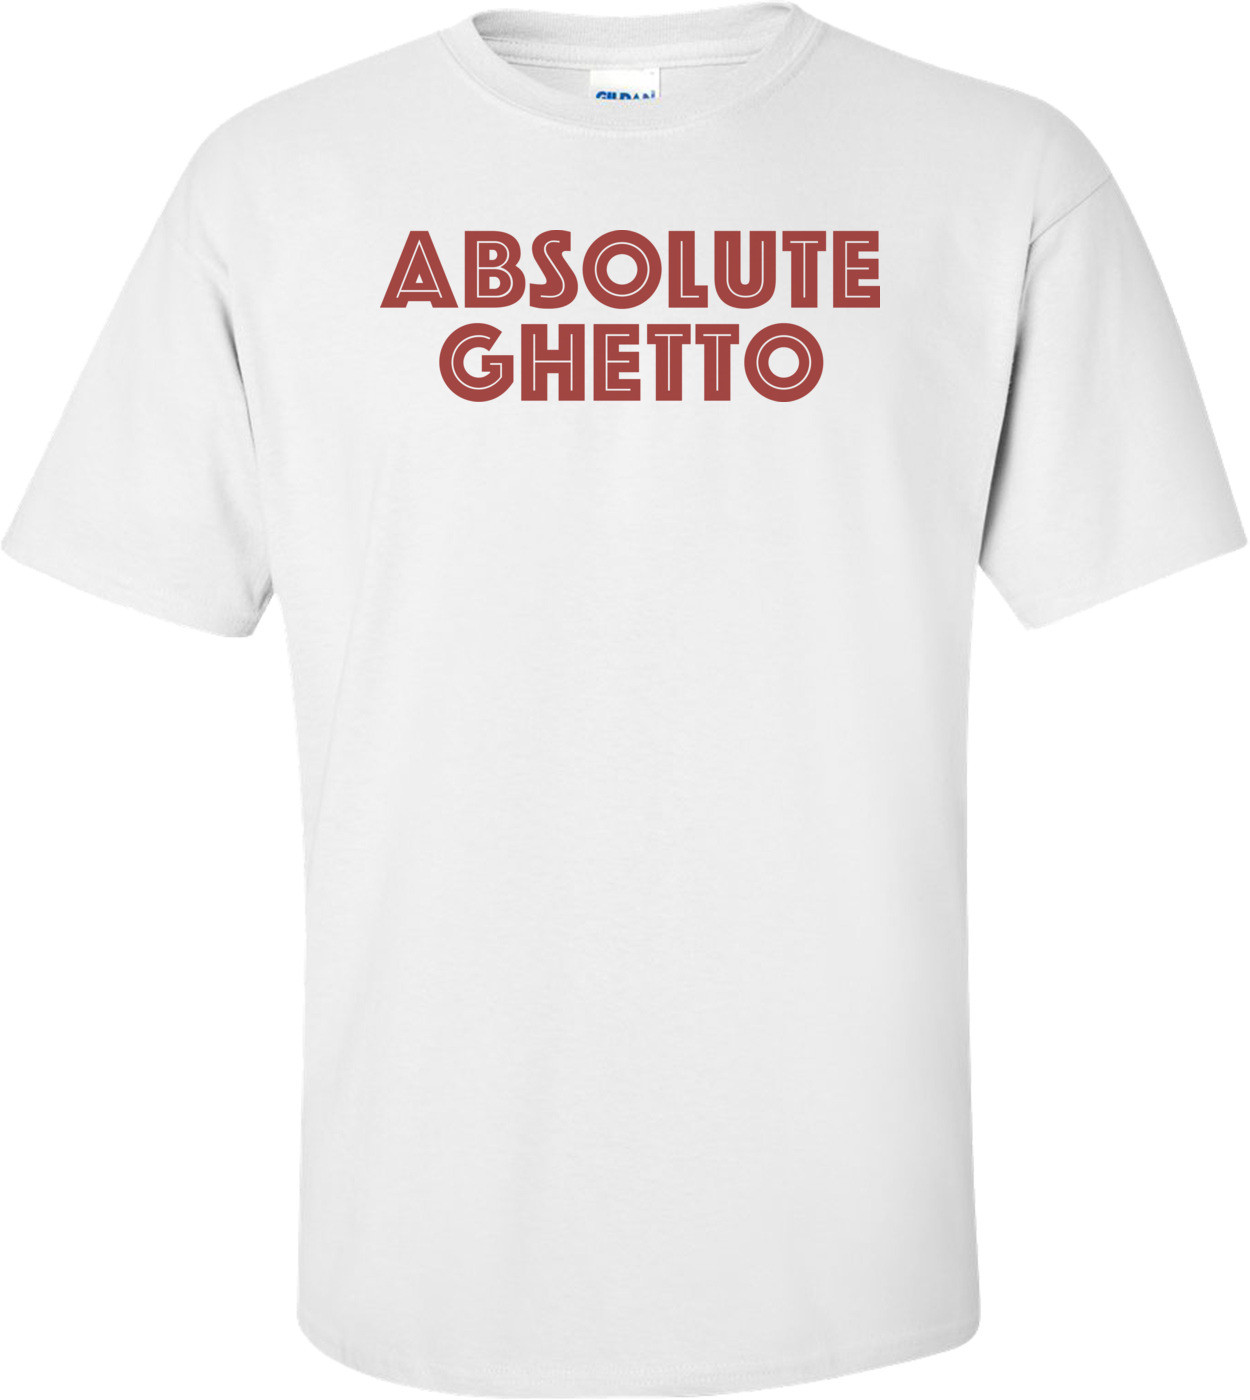 Absolute Ghetto T-shirt